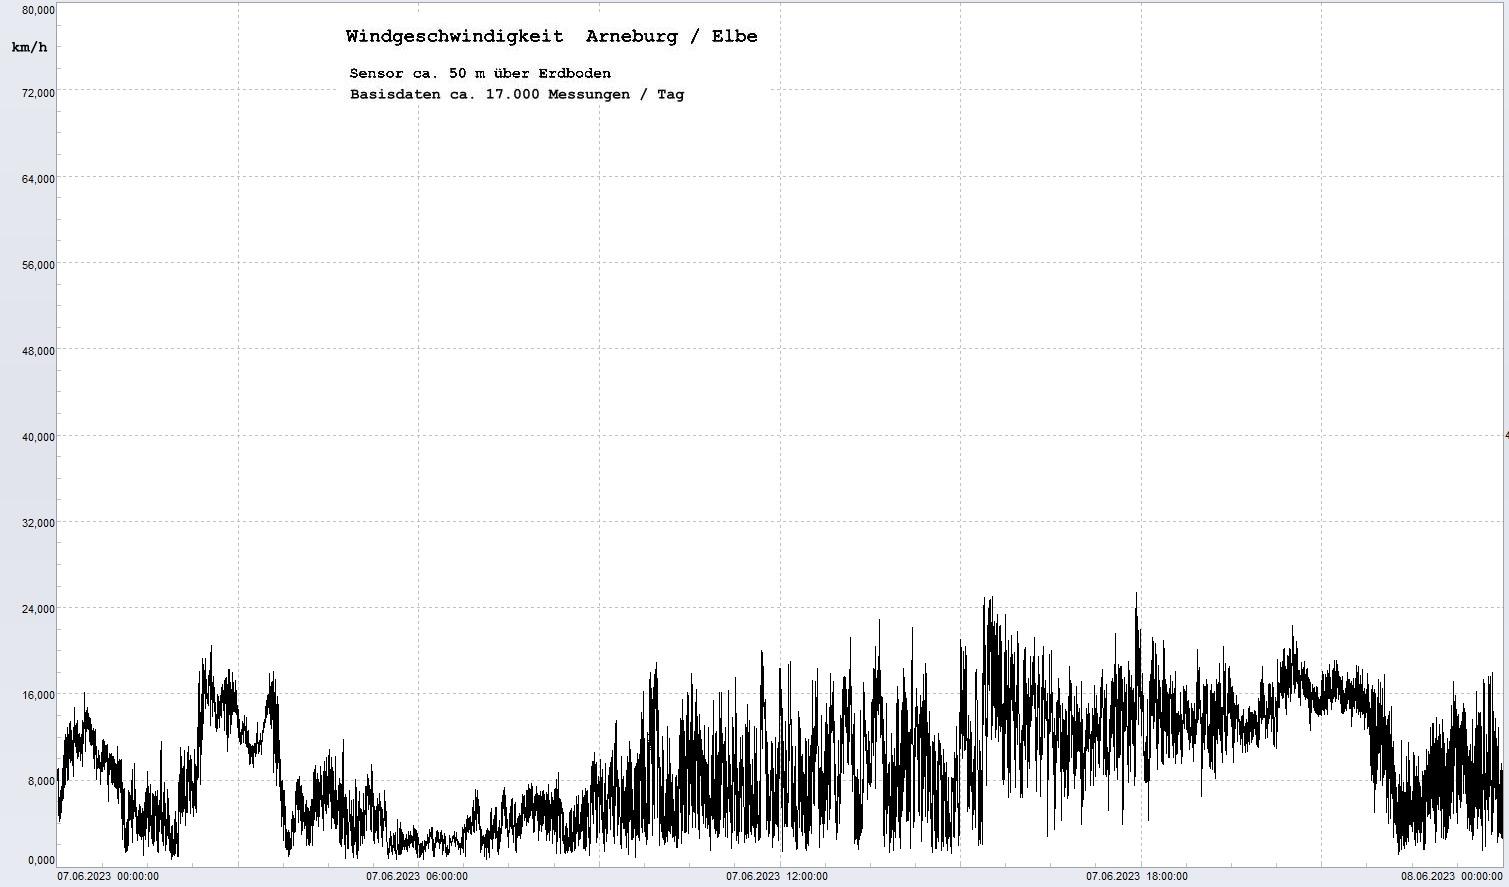 Arneburg Tages-Diagramm Winddaten, 07.06.2023
  Diagramm, Sensor auf Gebäude, ca. 50 m über Erdboden, Basis: 5s-Aufzeichnung